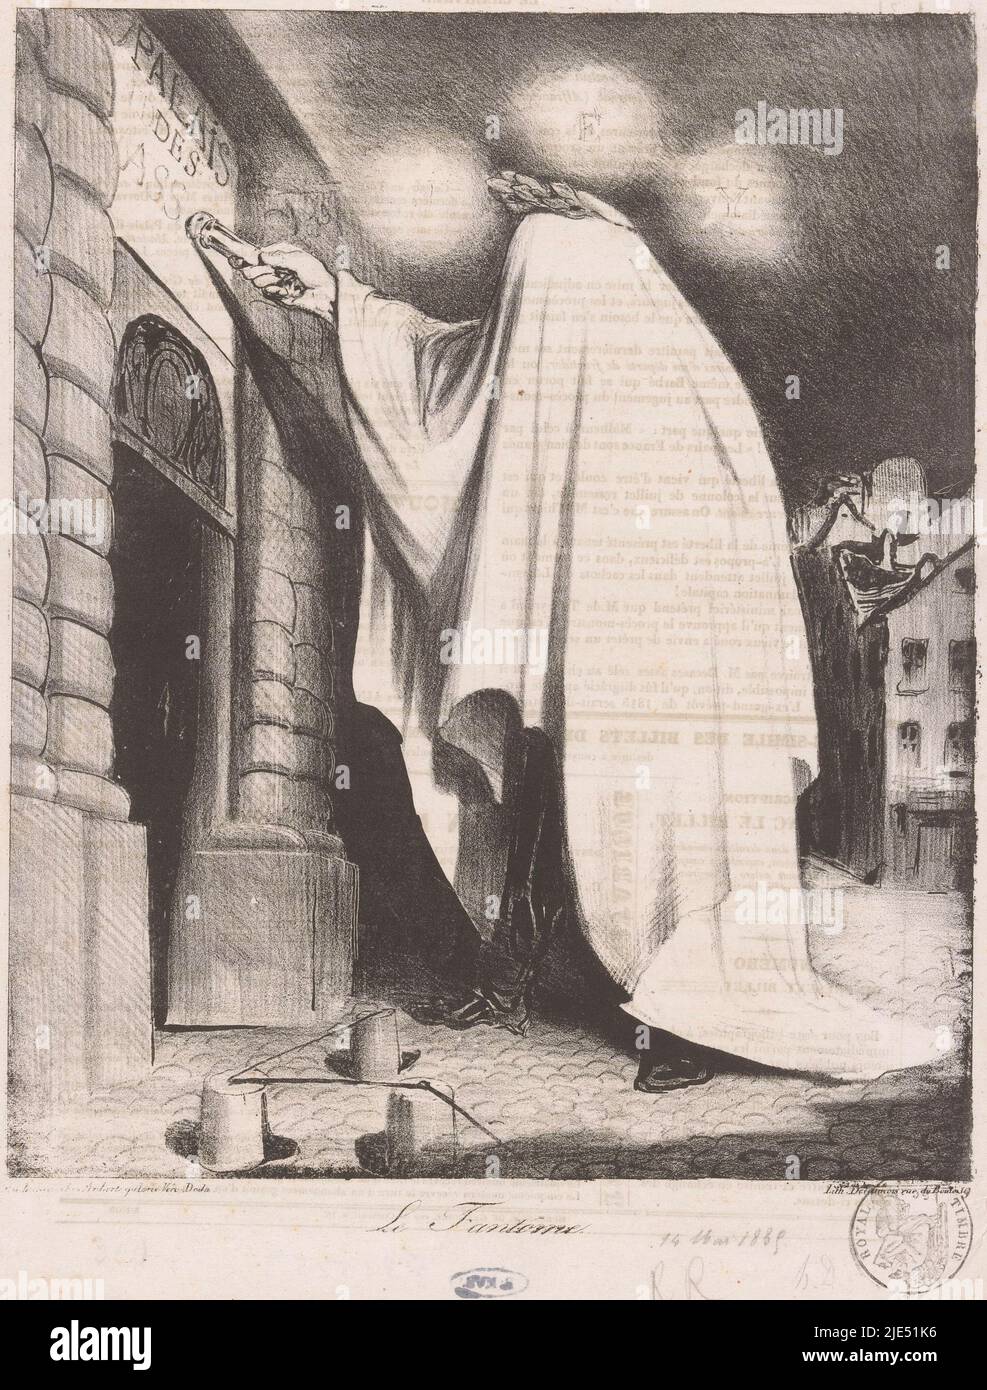 Fantasma di Marshal Ney bussa al Palais du Luxembourg le fantôme, tipografo: Honoré Daumier, stampatore: Nicolas Louis Delaunois, (menzionato sull'oggetto), editore: Aubert & Cie, (menzionato sull'oggetto), Parigi, 1835, carta, a 326 mm x l 243 mm Foto Stock